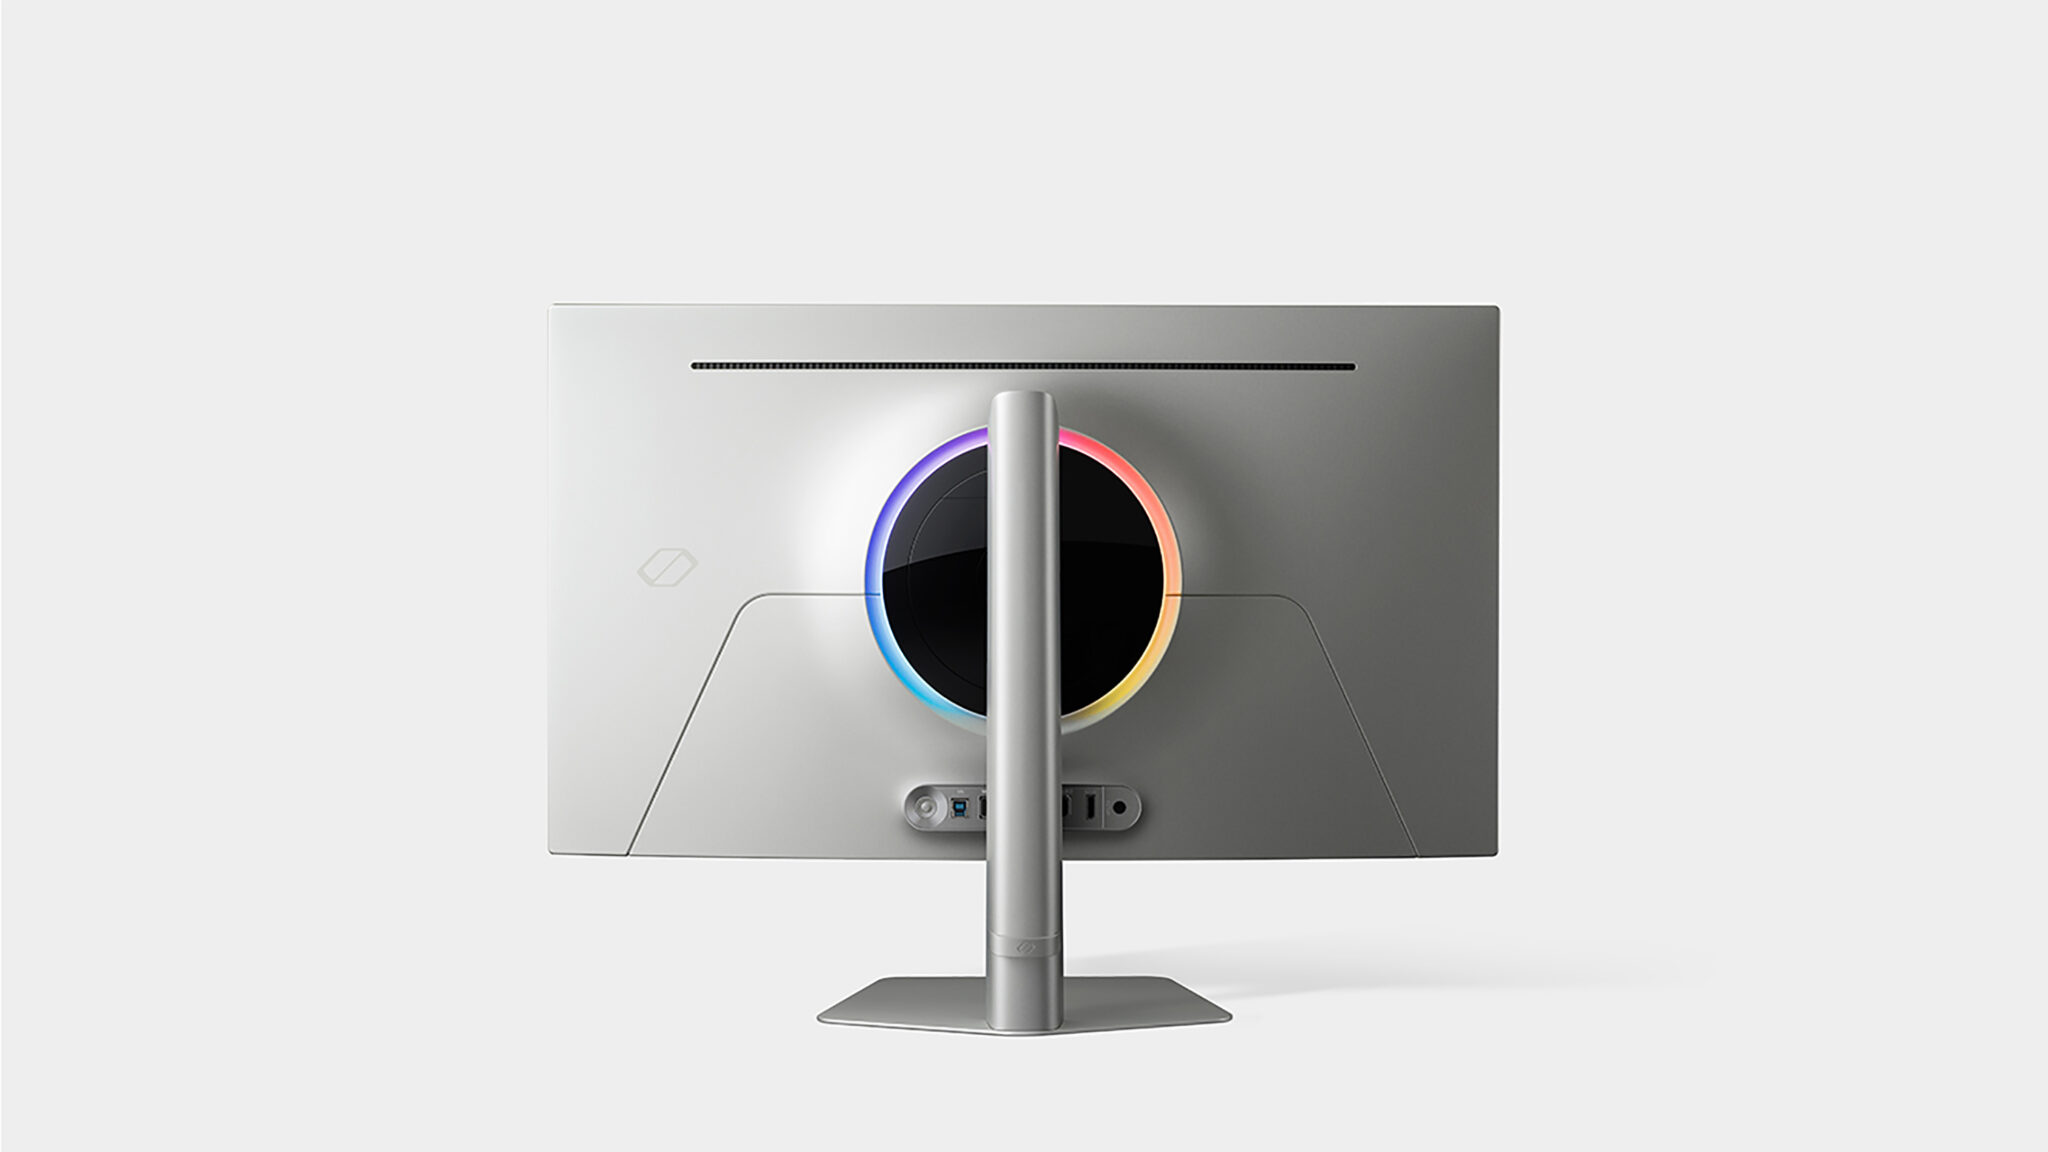 Die Rückseite aller drei Monitore ziert der für die Odyssey-Reihe typische RGB-Ring.